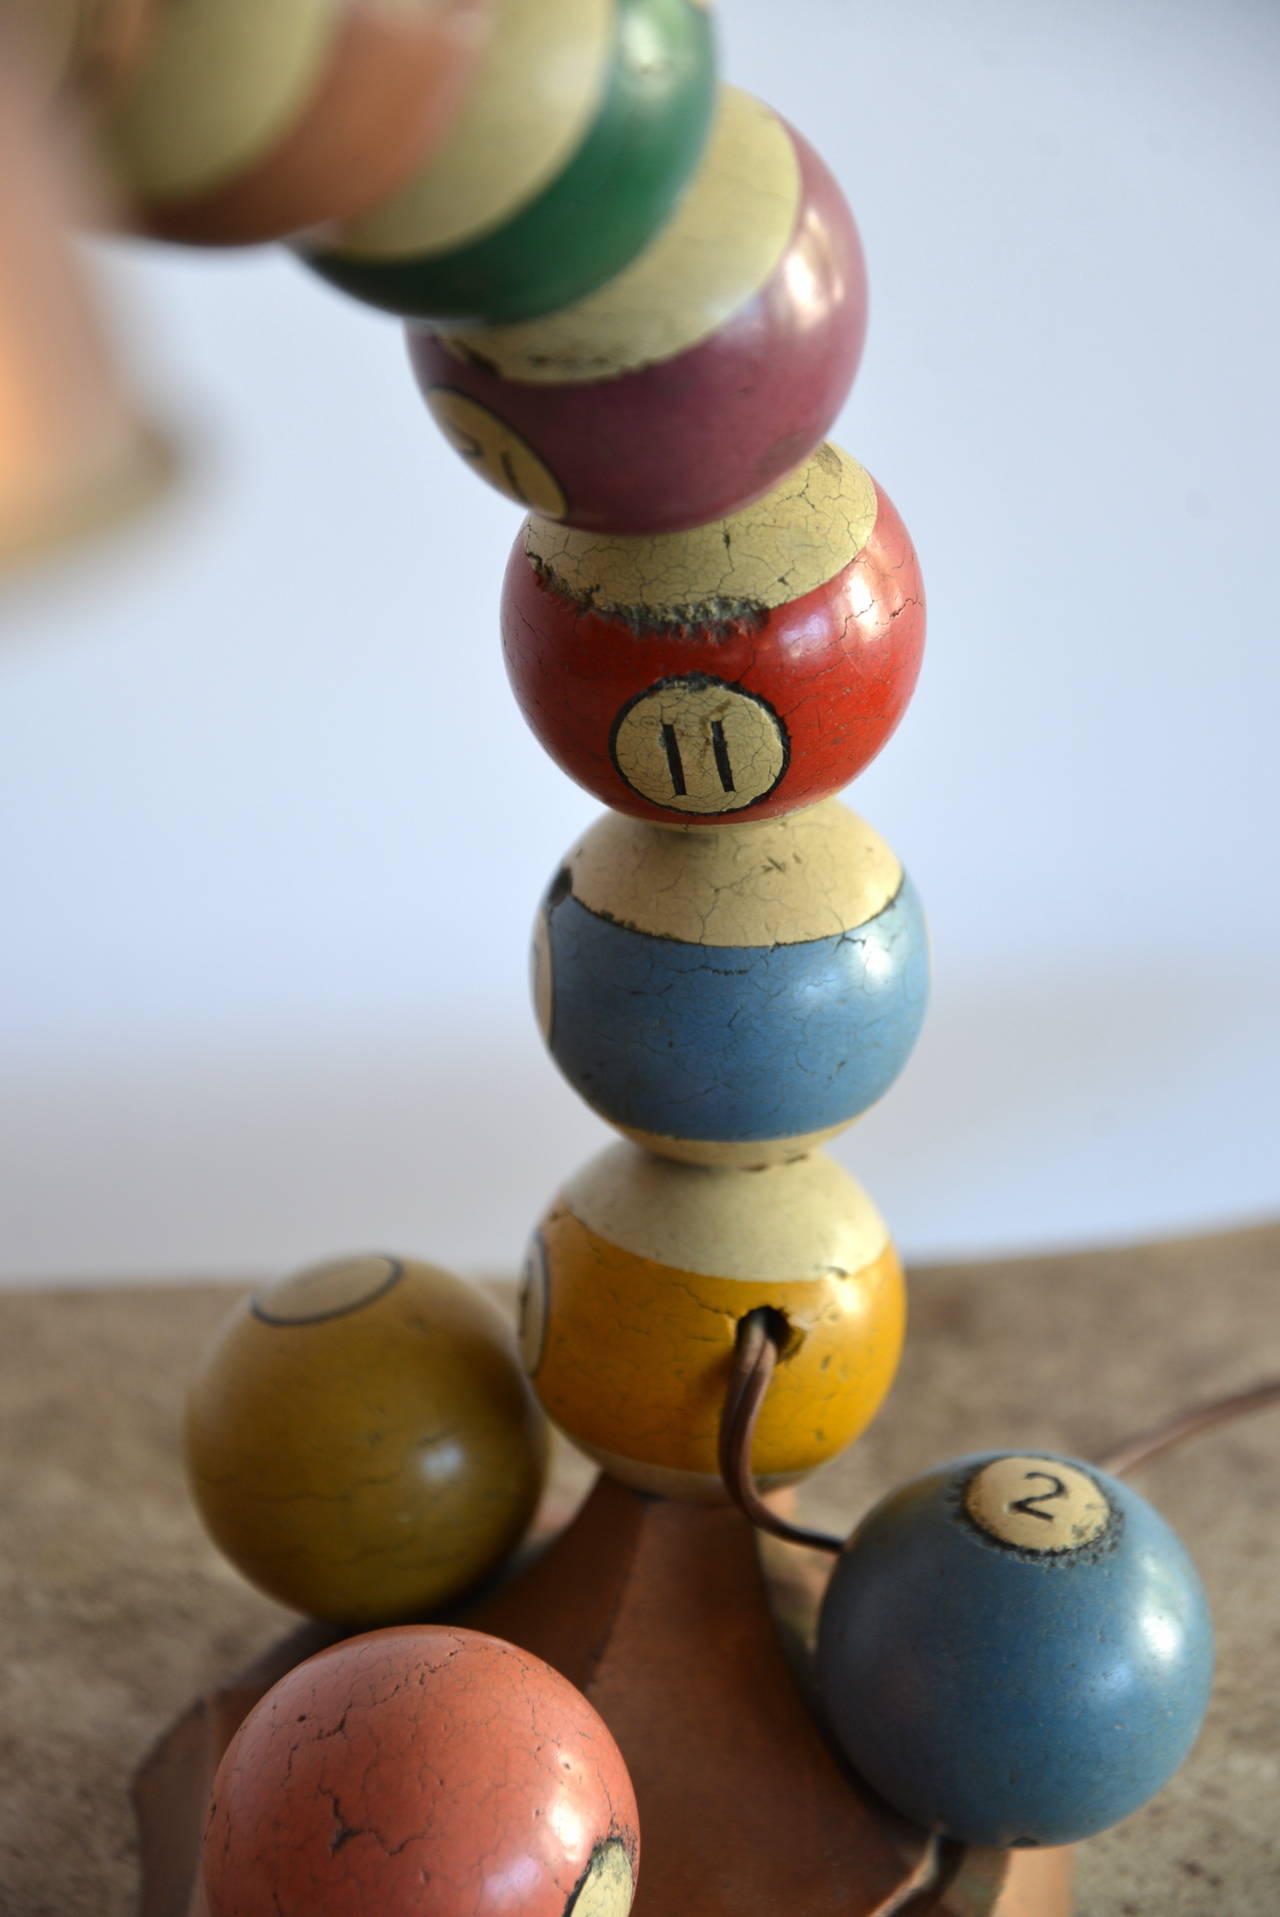 Vintage 1920s gooseneck adjustable table lamp adorned with vintage wooden pool balls.